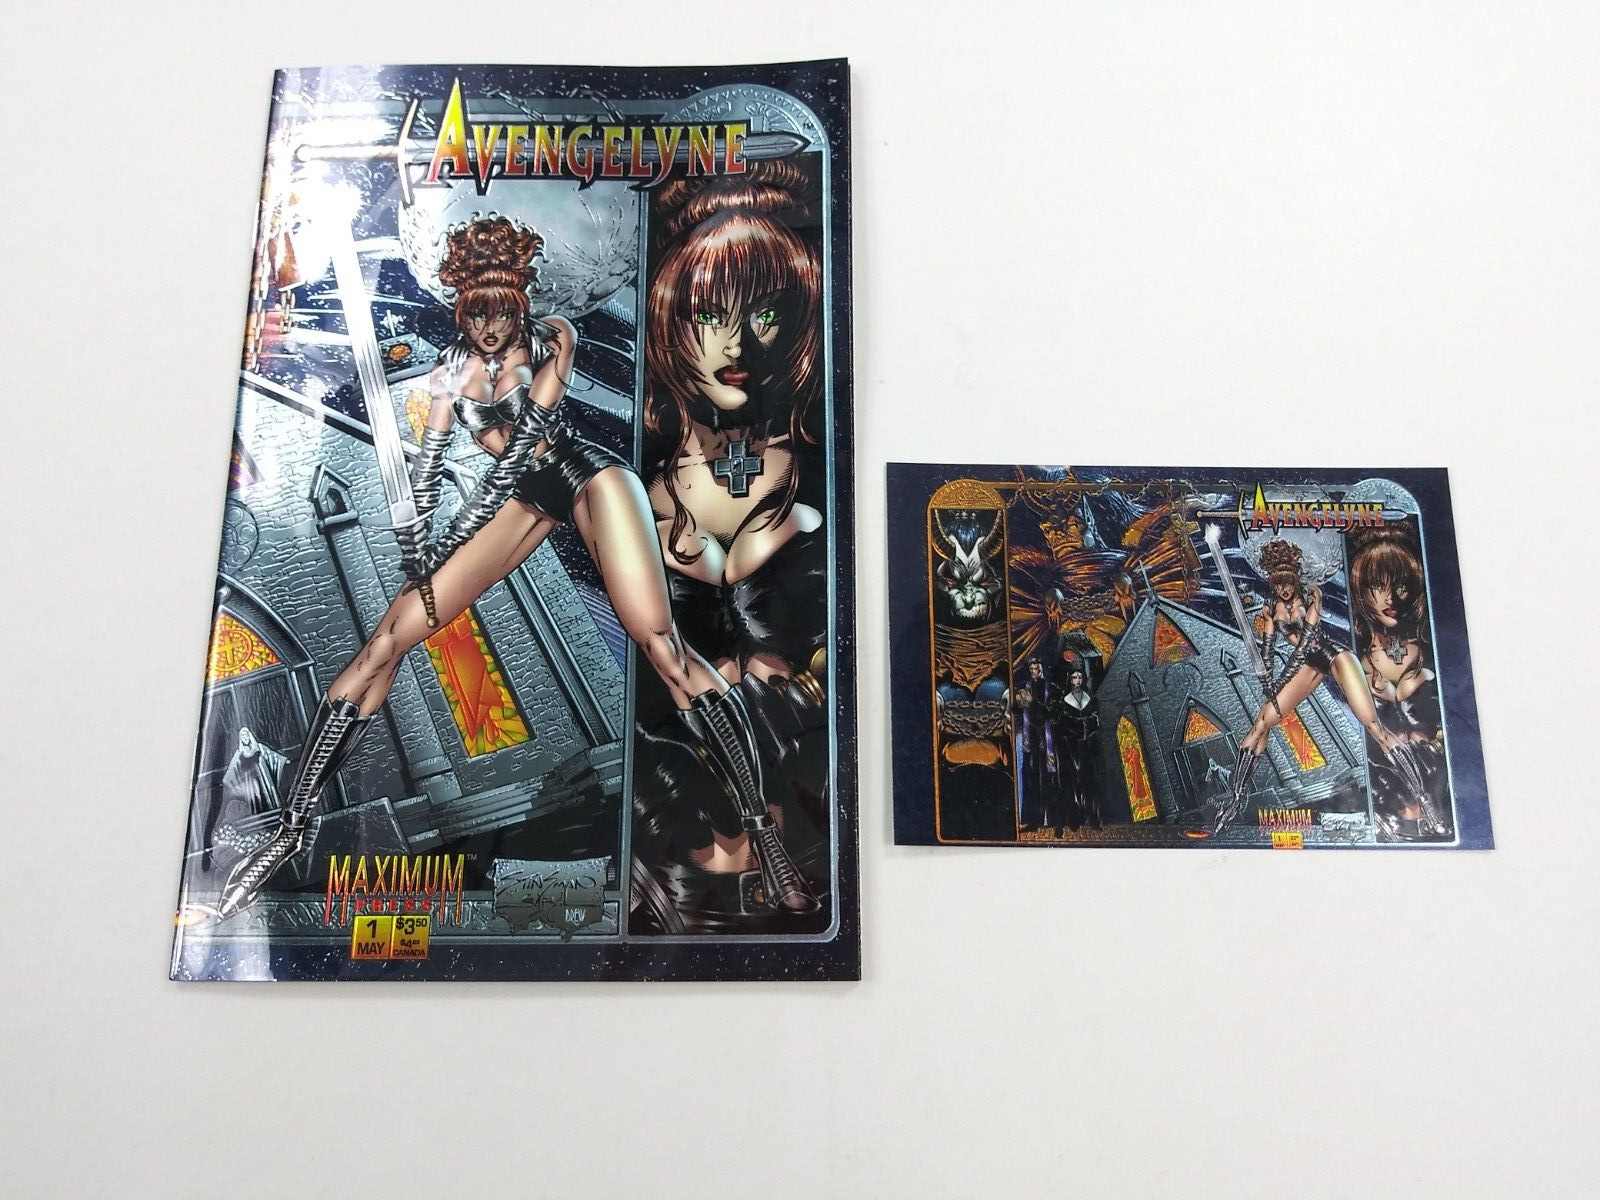 Avengelyne #1 Maximum Press 1995 1st App Movie + Card Chromium Cover NM